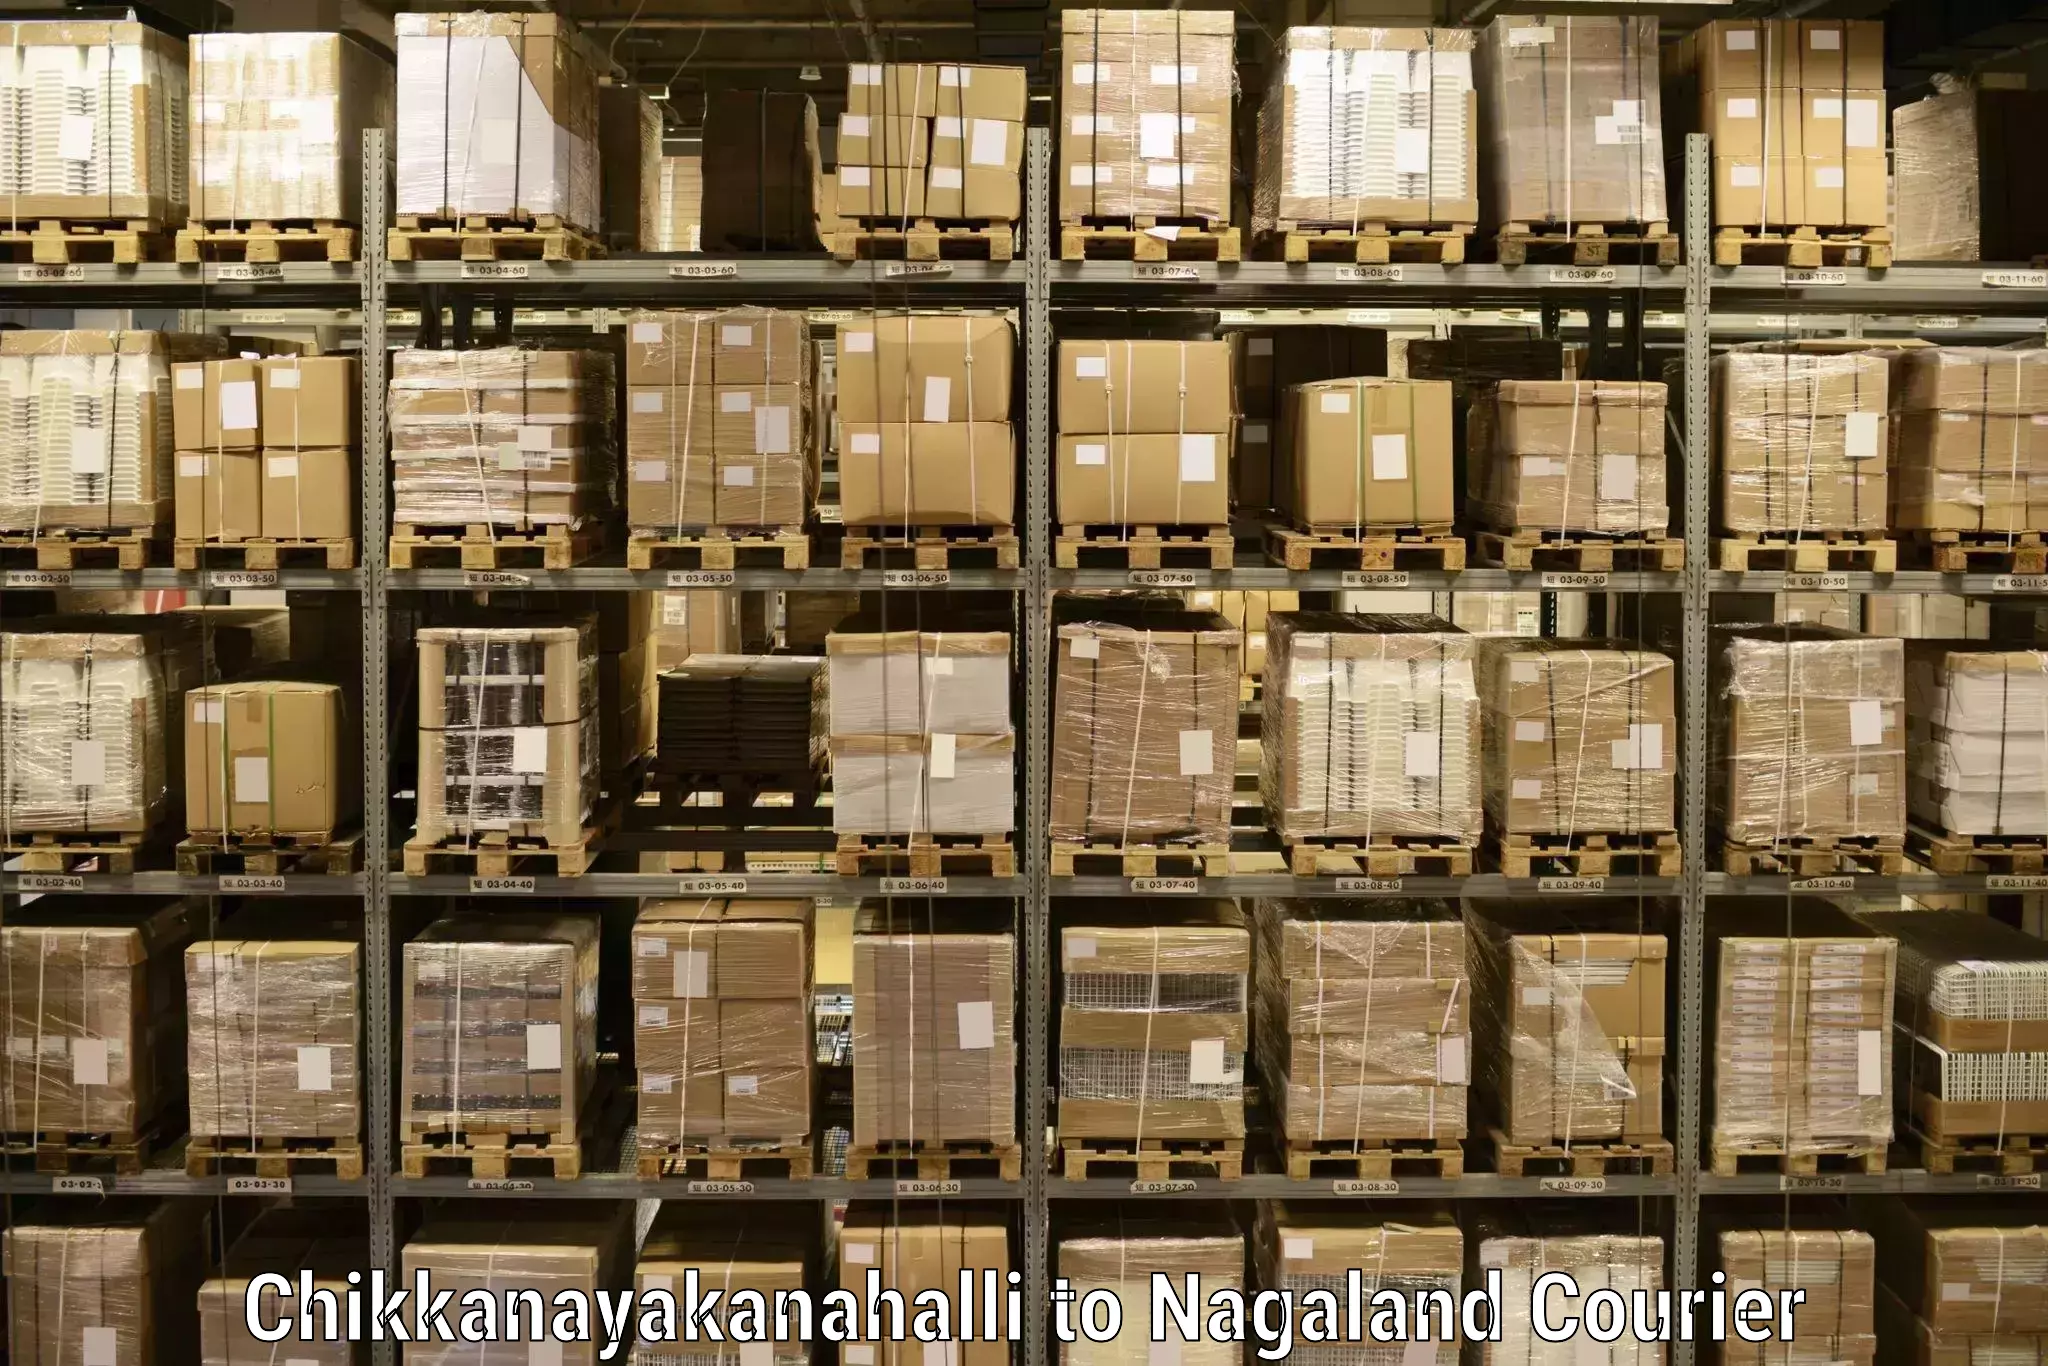 Cargo delivery service Chikkanayakanahalli to Peren